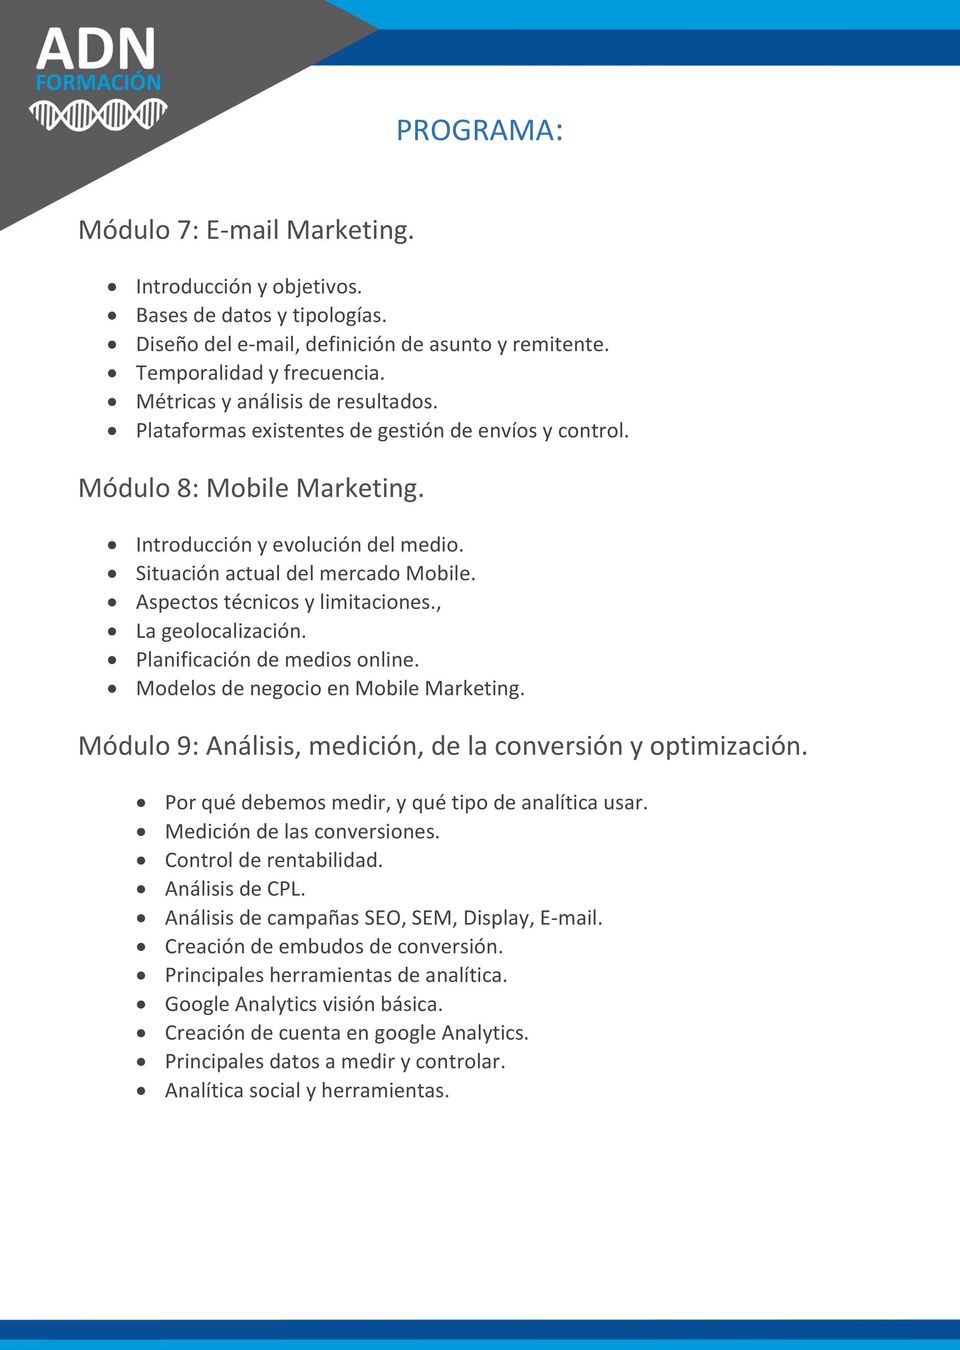 Aspectos técnicos y limitaciones., La geolocalización. Planificación de medios online. Modelos de negocio en Mobile Marketing. Módulo 9: Análisis, medición, de la conversión y optimización.